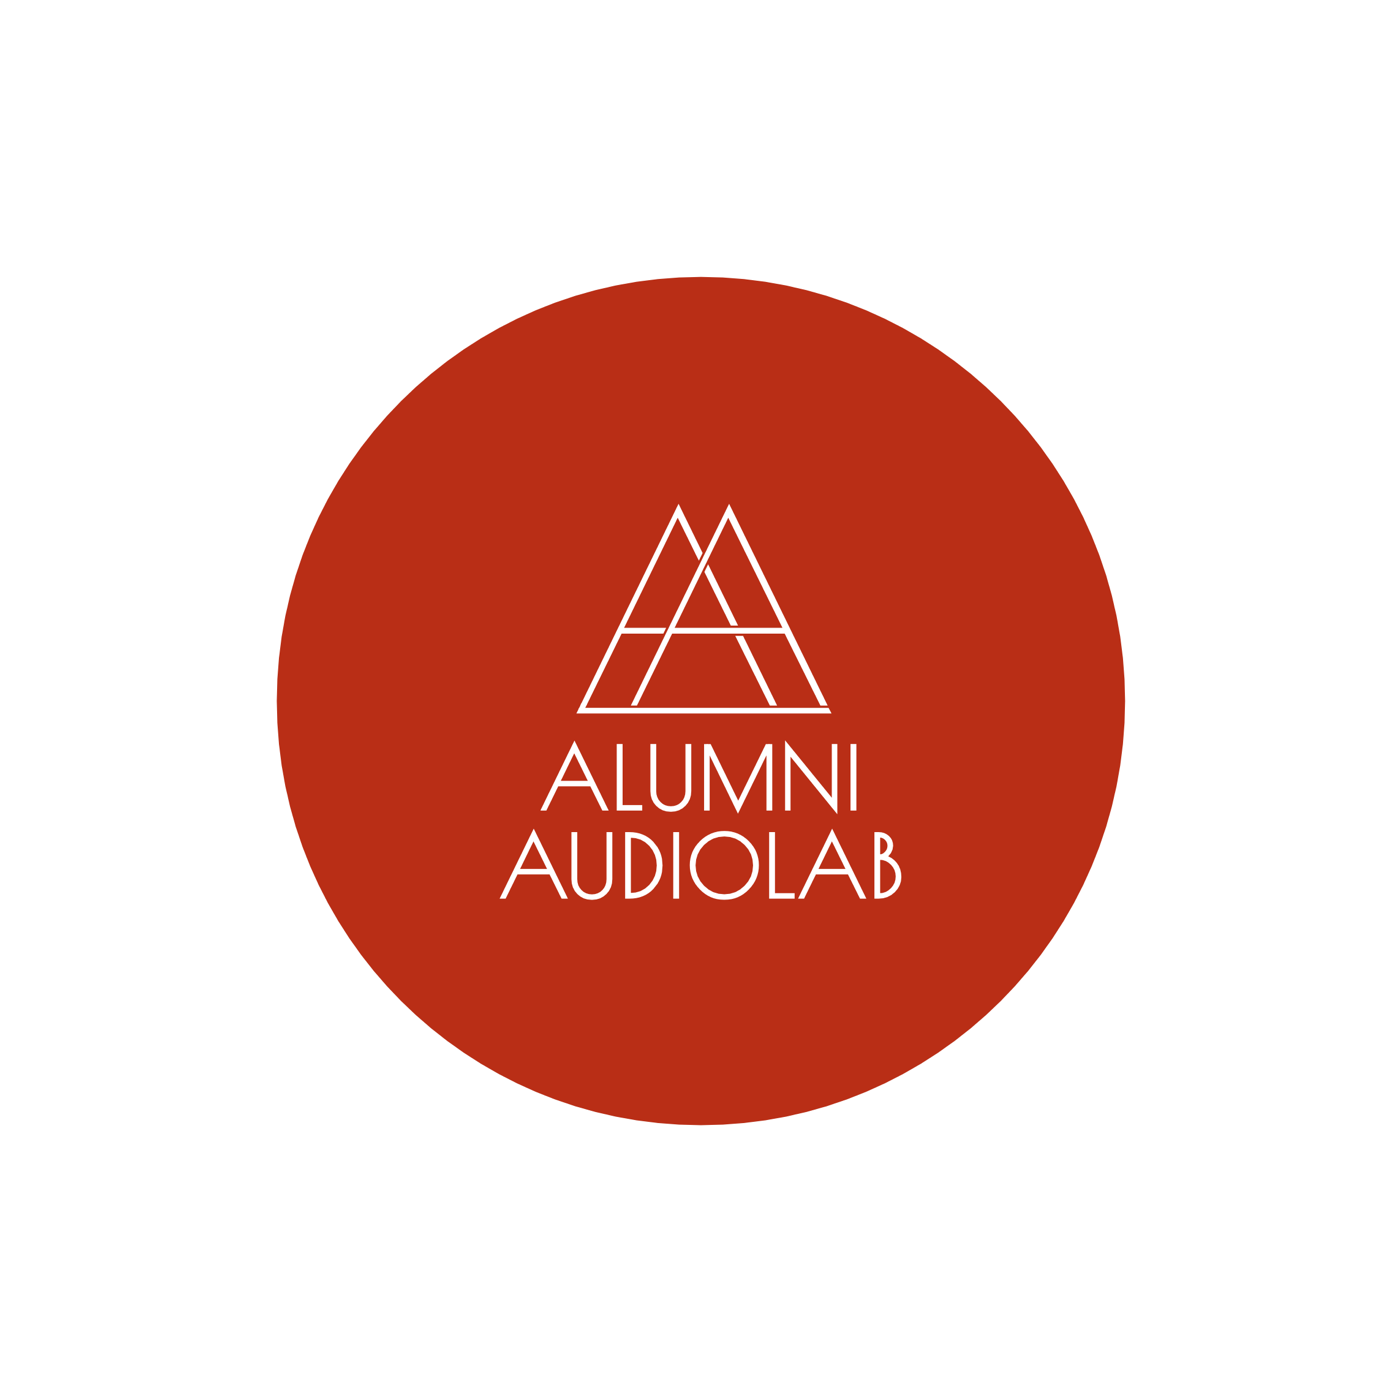 Alumni AudioLab